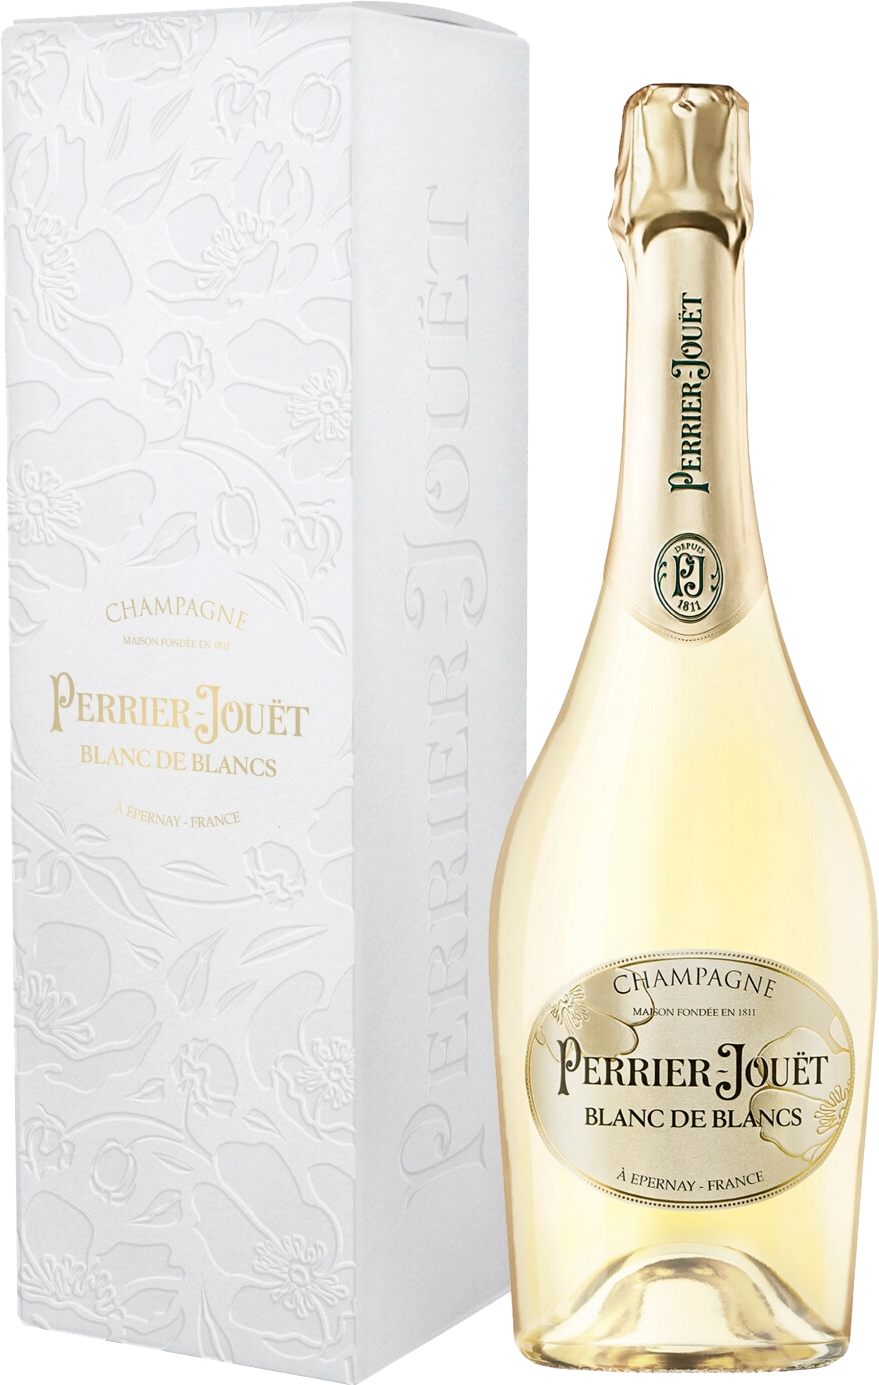 Perrier-Jouet Blanc De Blancs Champagne AOC Brut (gift box) blanc de blancs brut nature champagne aoс laherte freres gift box